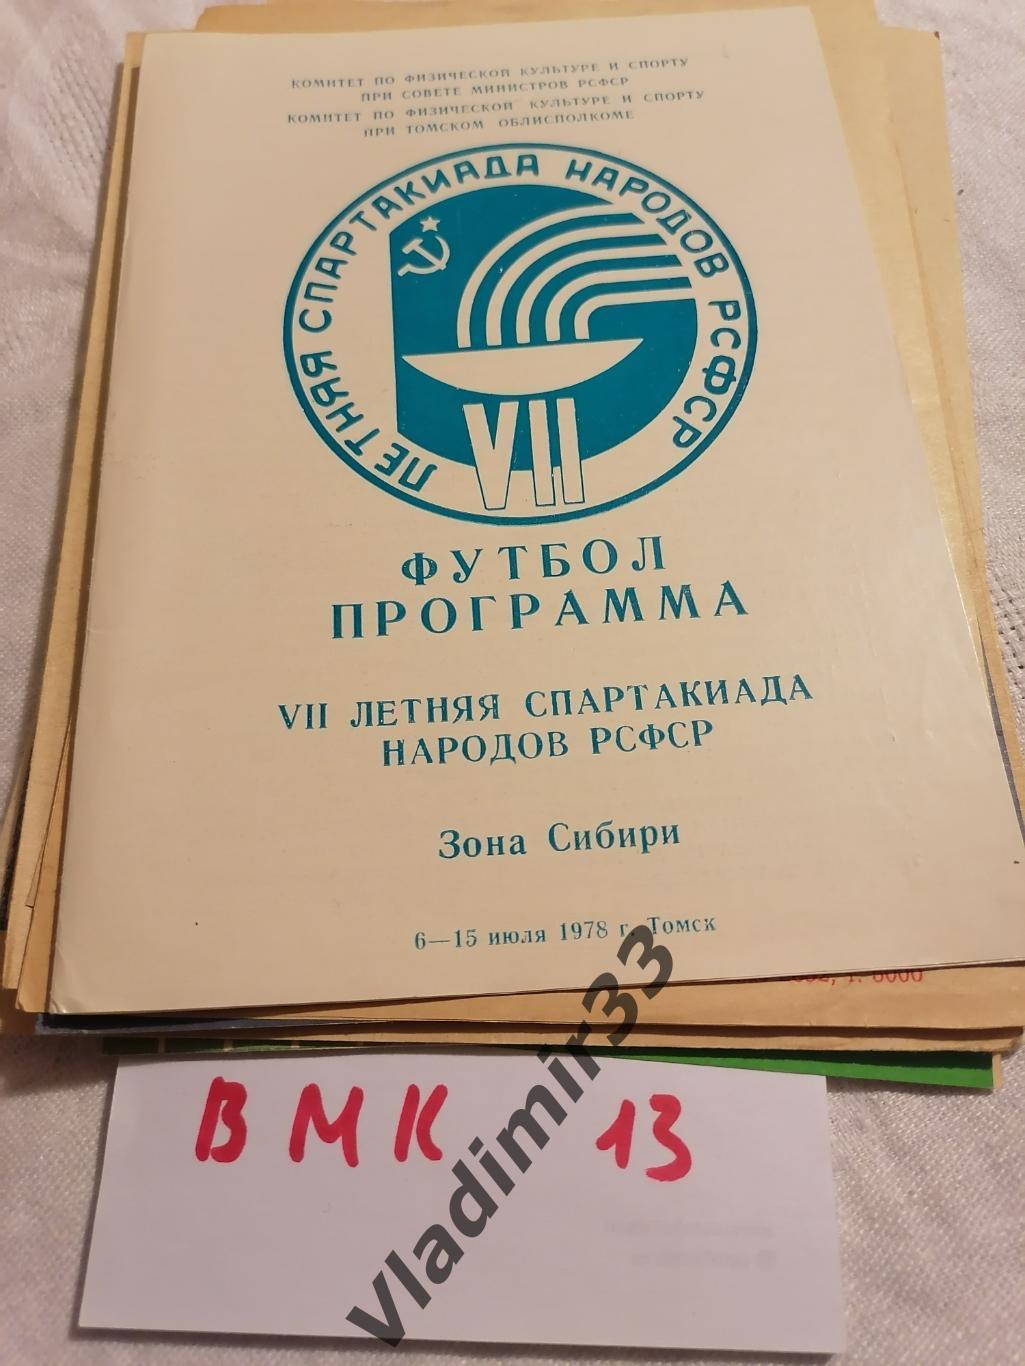 1978 Спартакиада Томск Новосибирск Омск Красноярск 1